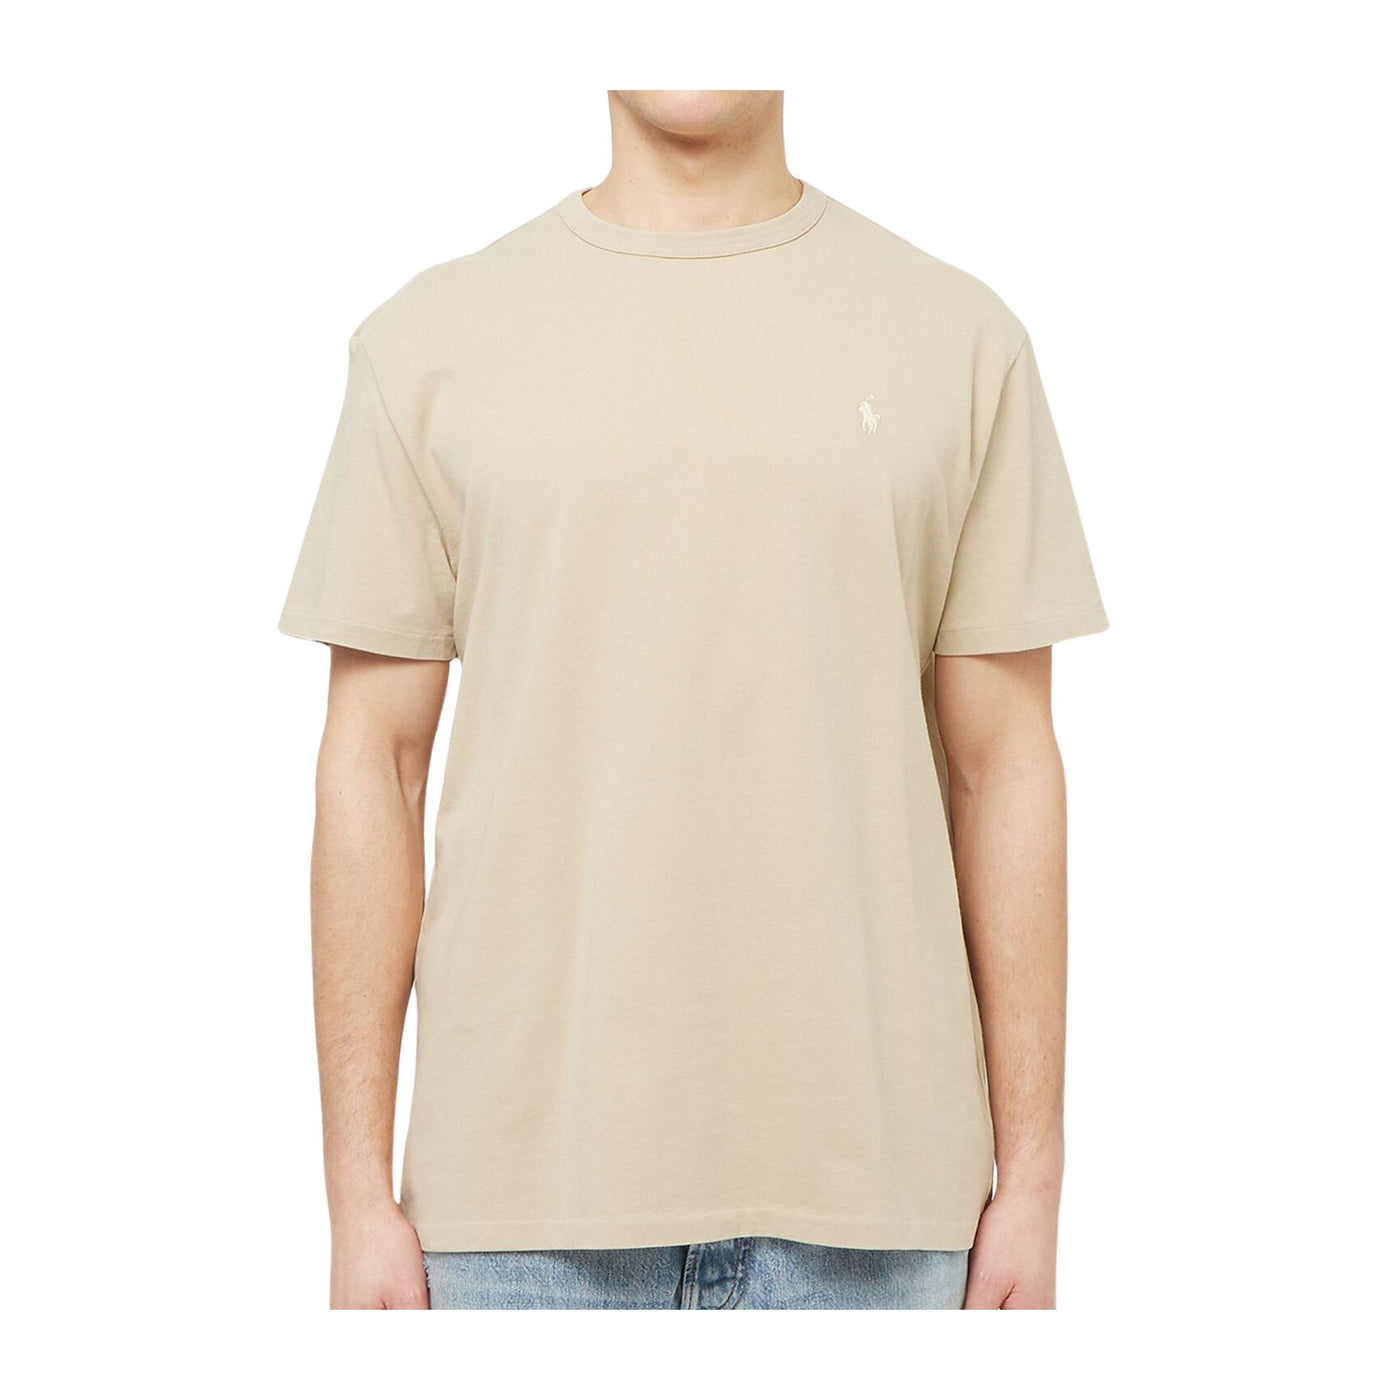 T-shirt Uomo Beige realizzata in puro cotone a maniche corte